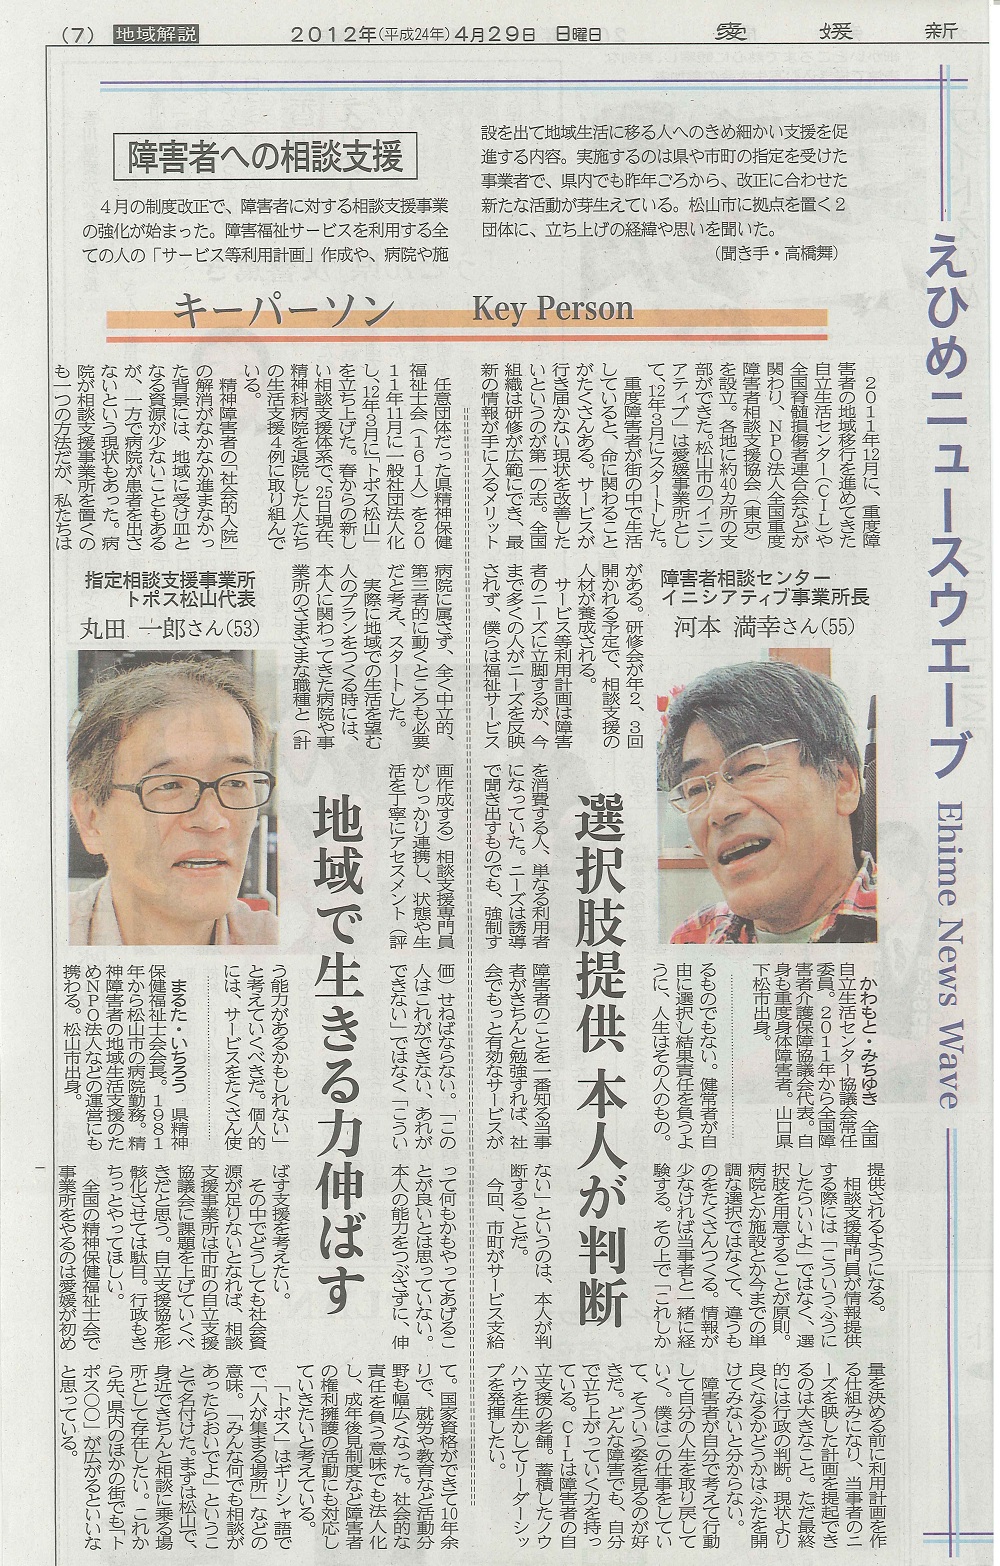 愛媛新聞2012年4月29日えひめニューウェブ記事